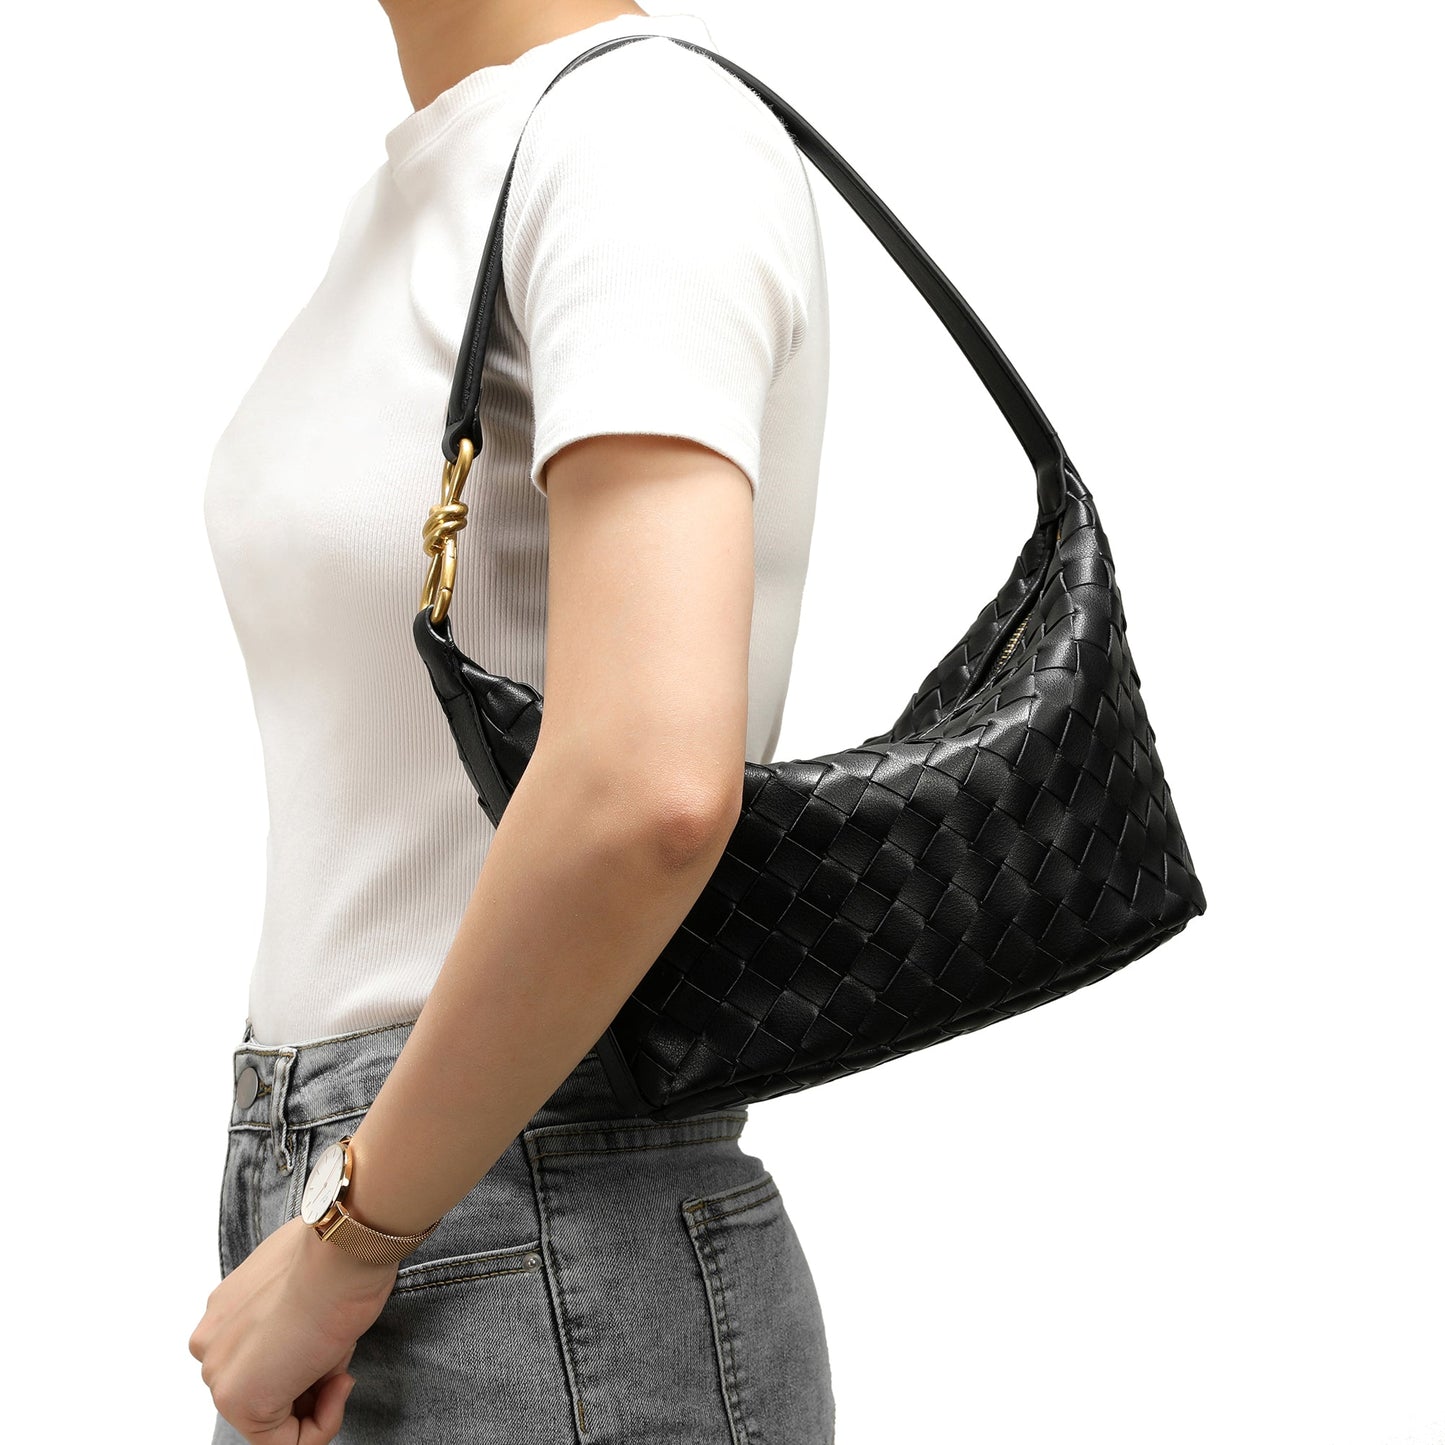 Woven Leather Hobo/ Shoulder Bag